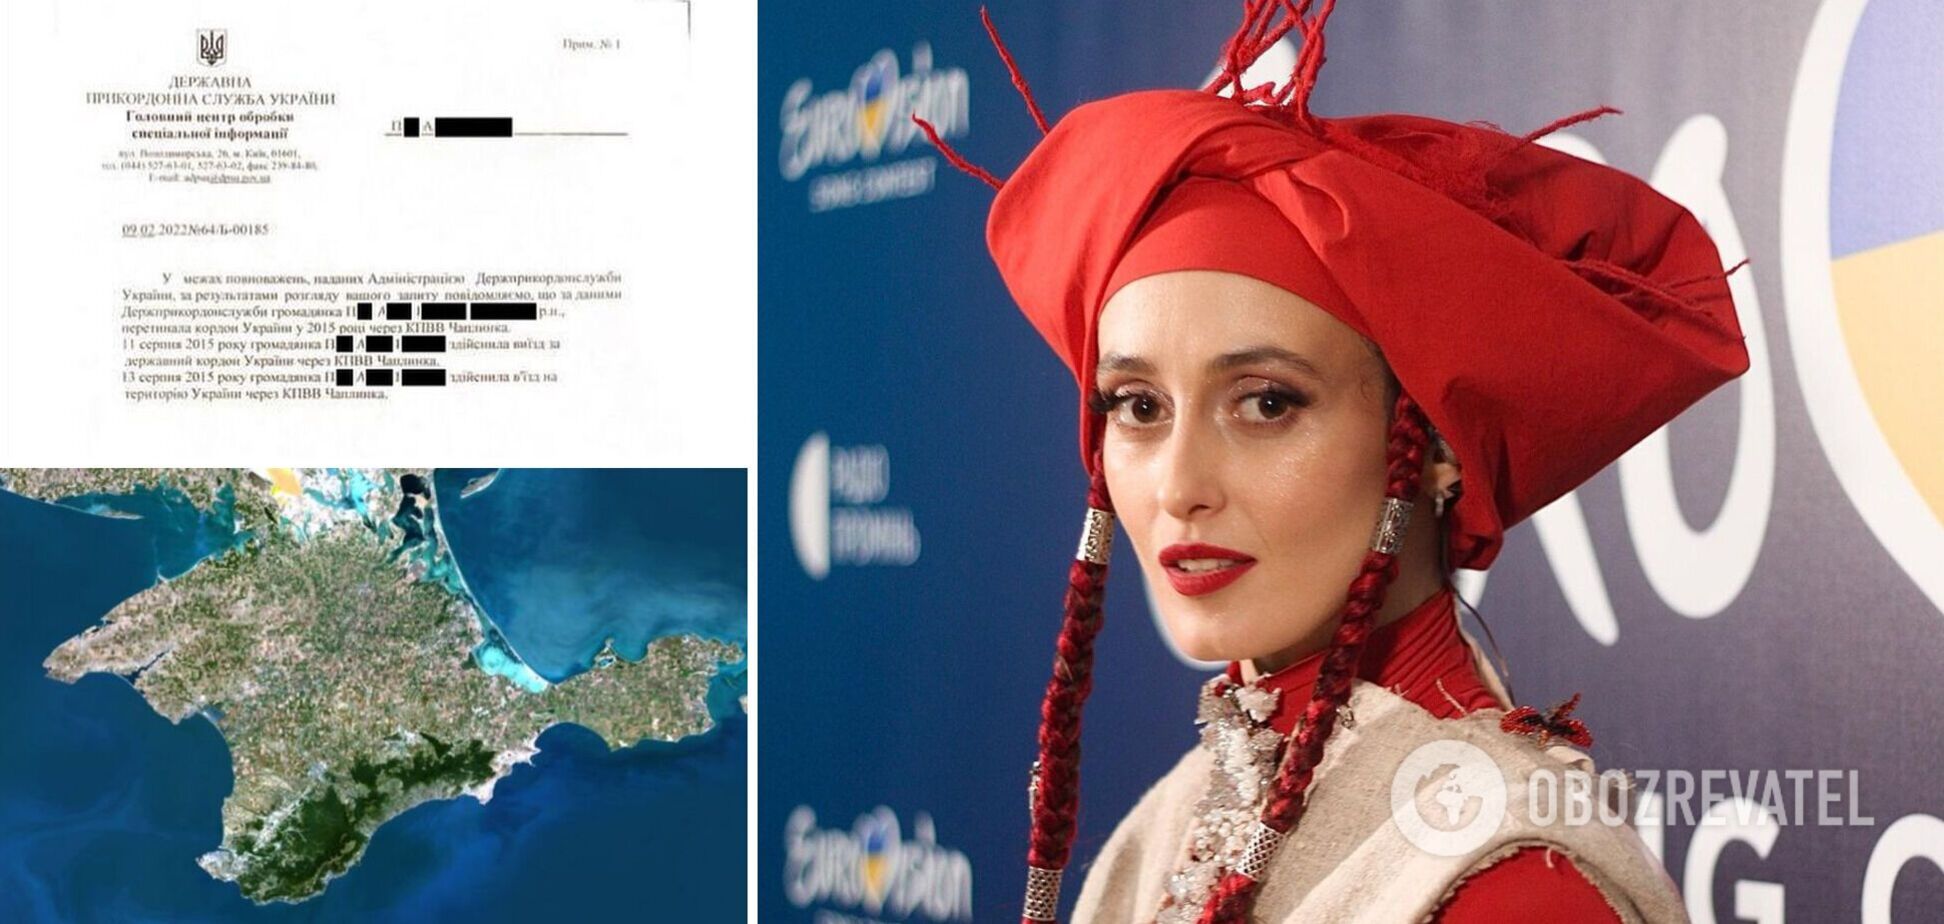 Alina Pash уличили в подделке документов о въезде в Крым. 'Суспільне' срочно обратилось к ГПСУ